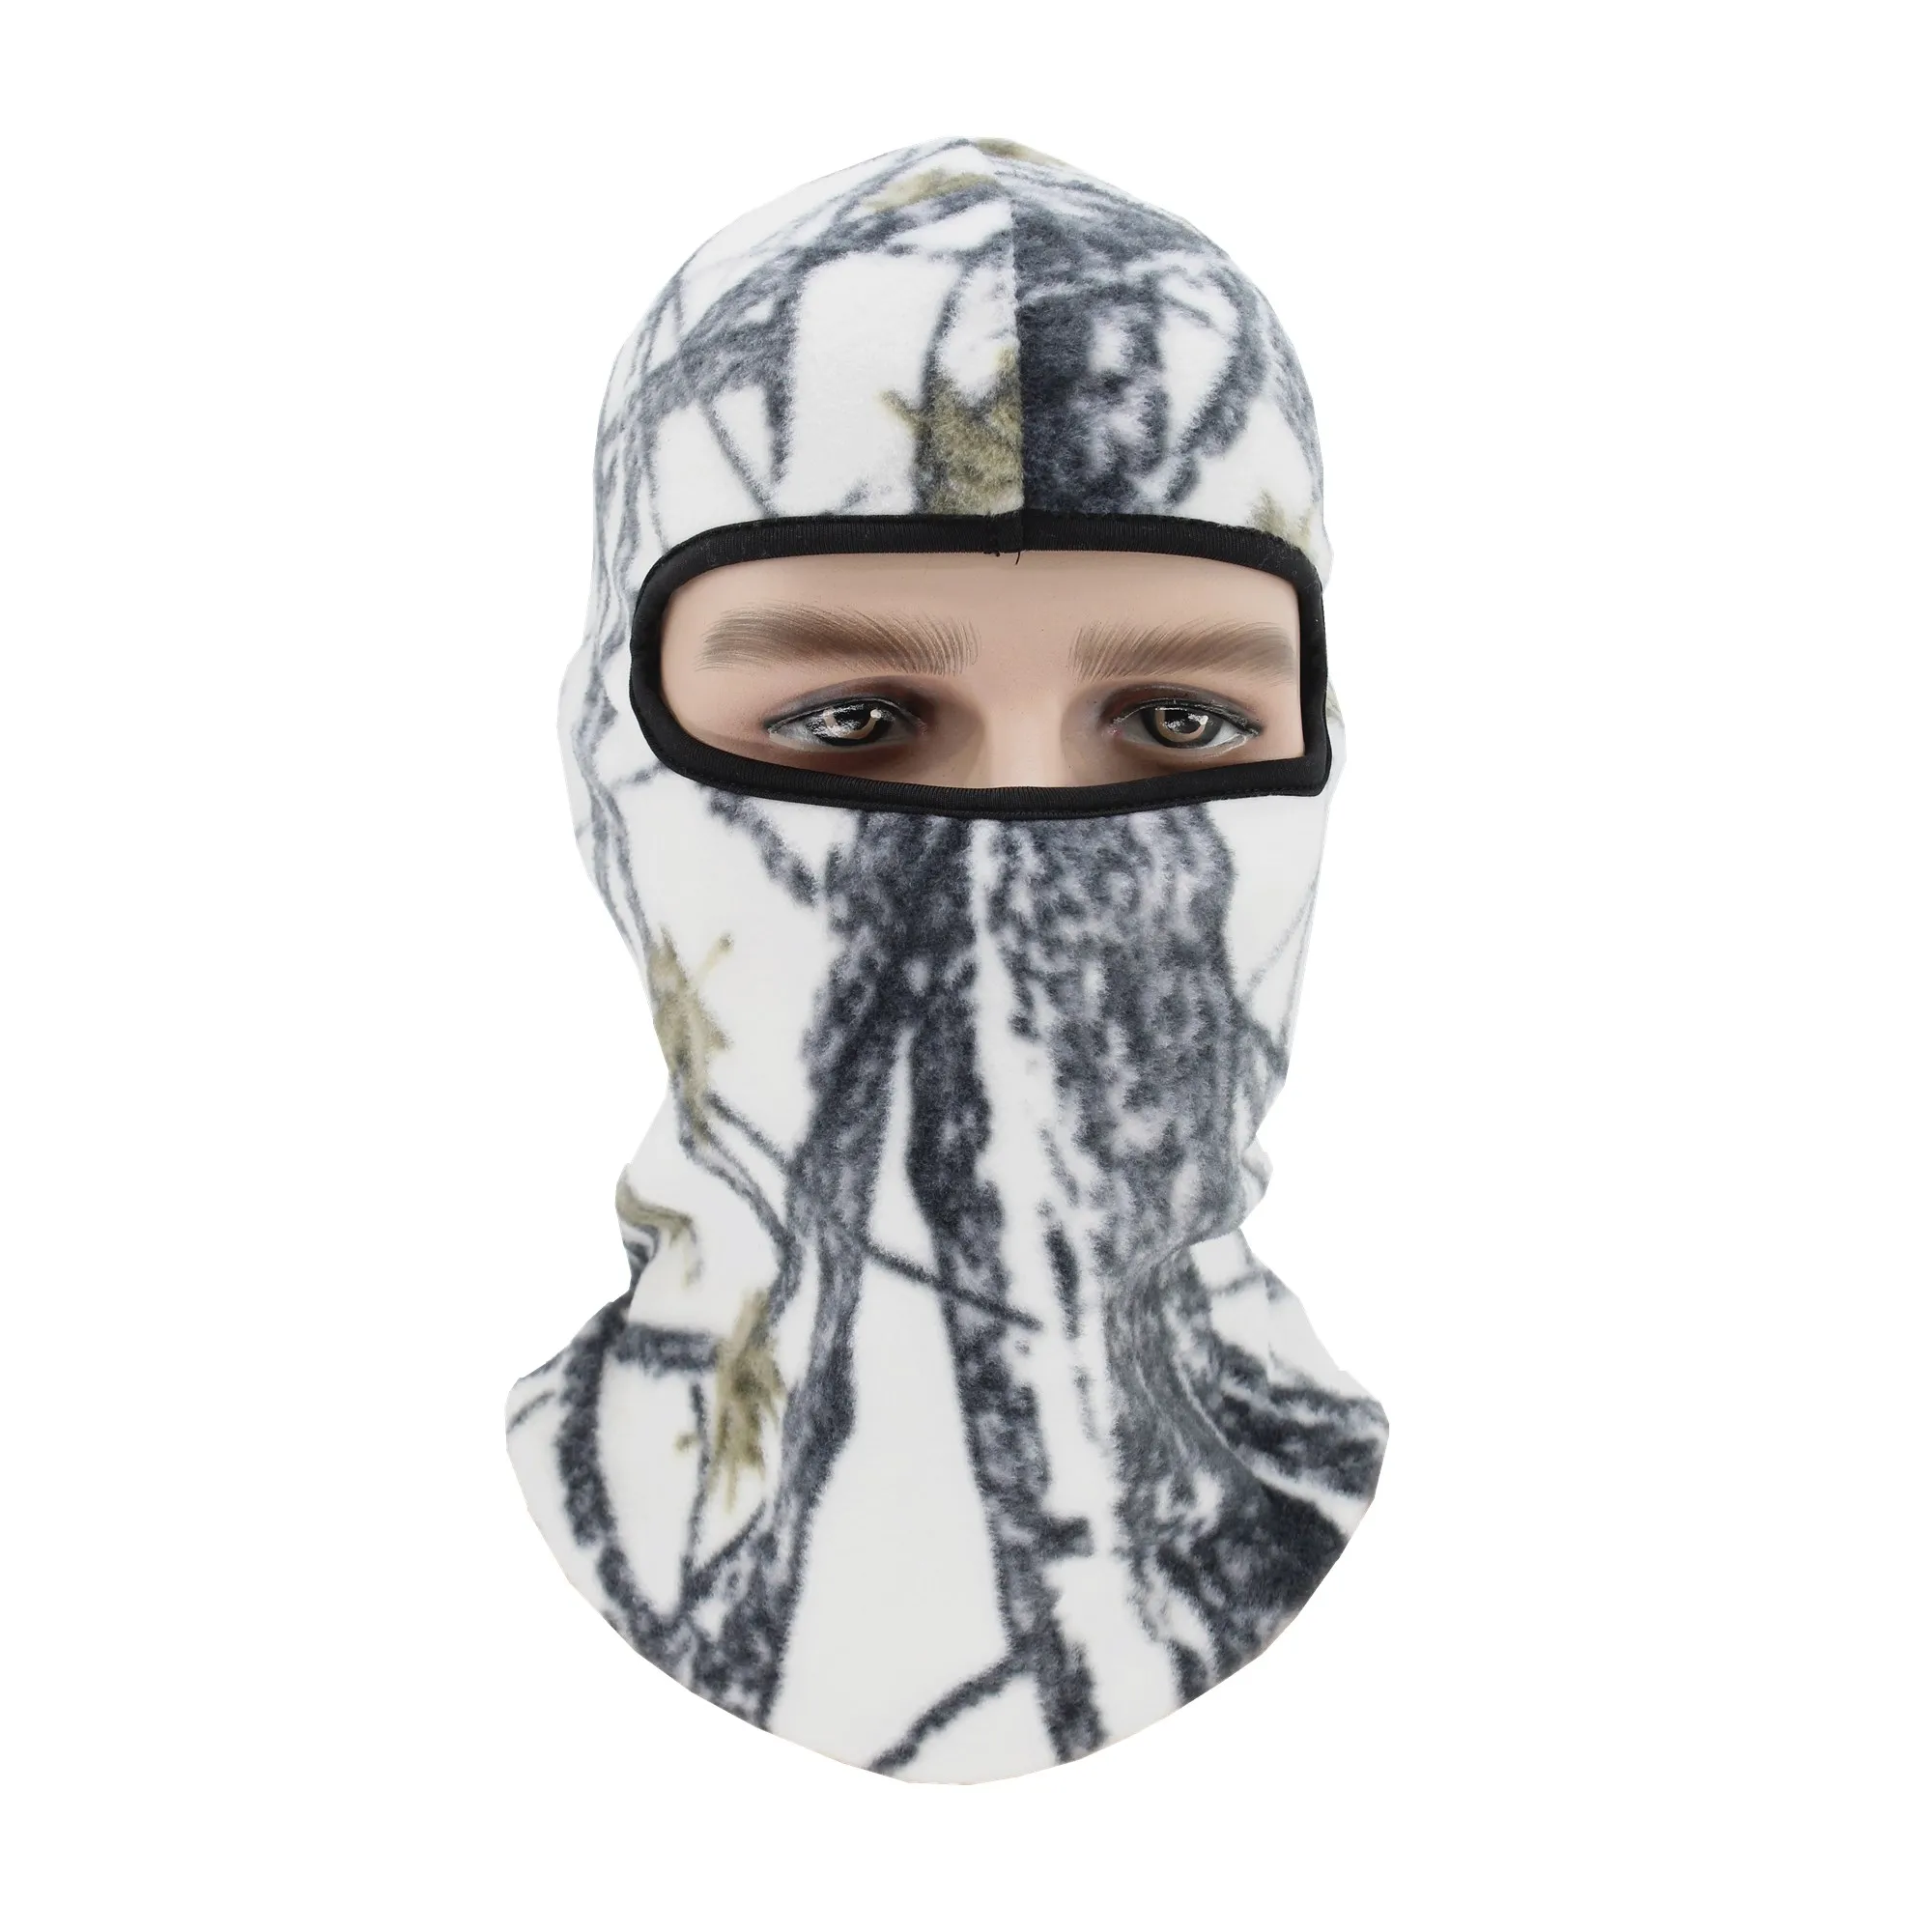 Зимняя Балаклава, маска для лица, мотоциклетный флисовый чехол, защита от пыли, Ветрозащитная маска для всего лица, шапка, грелка для шеи, шлем для катания на лыжах, защита для лица